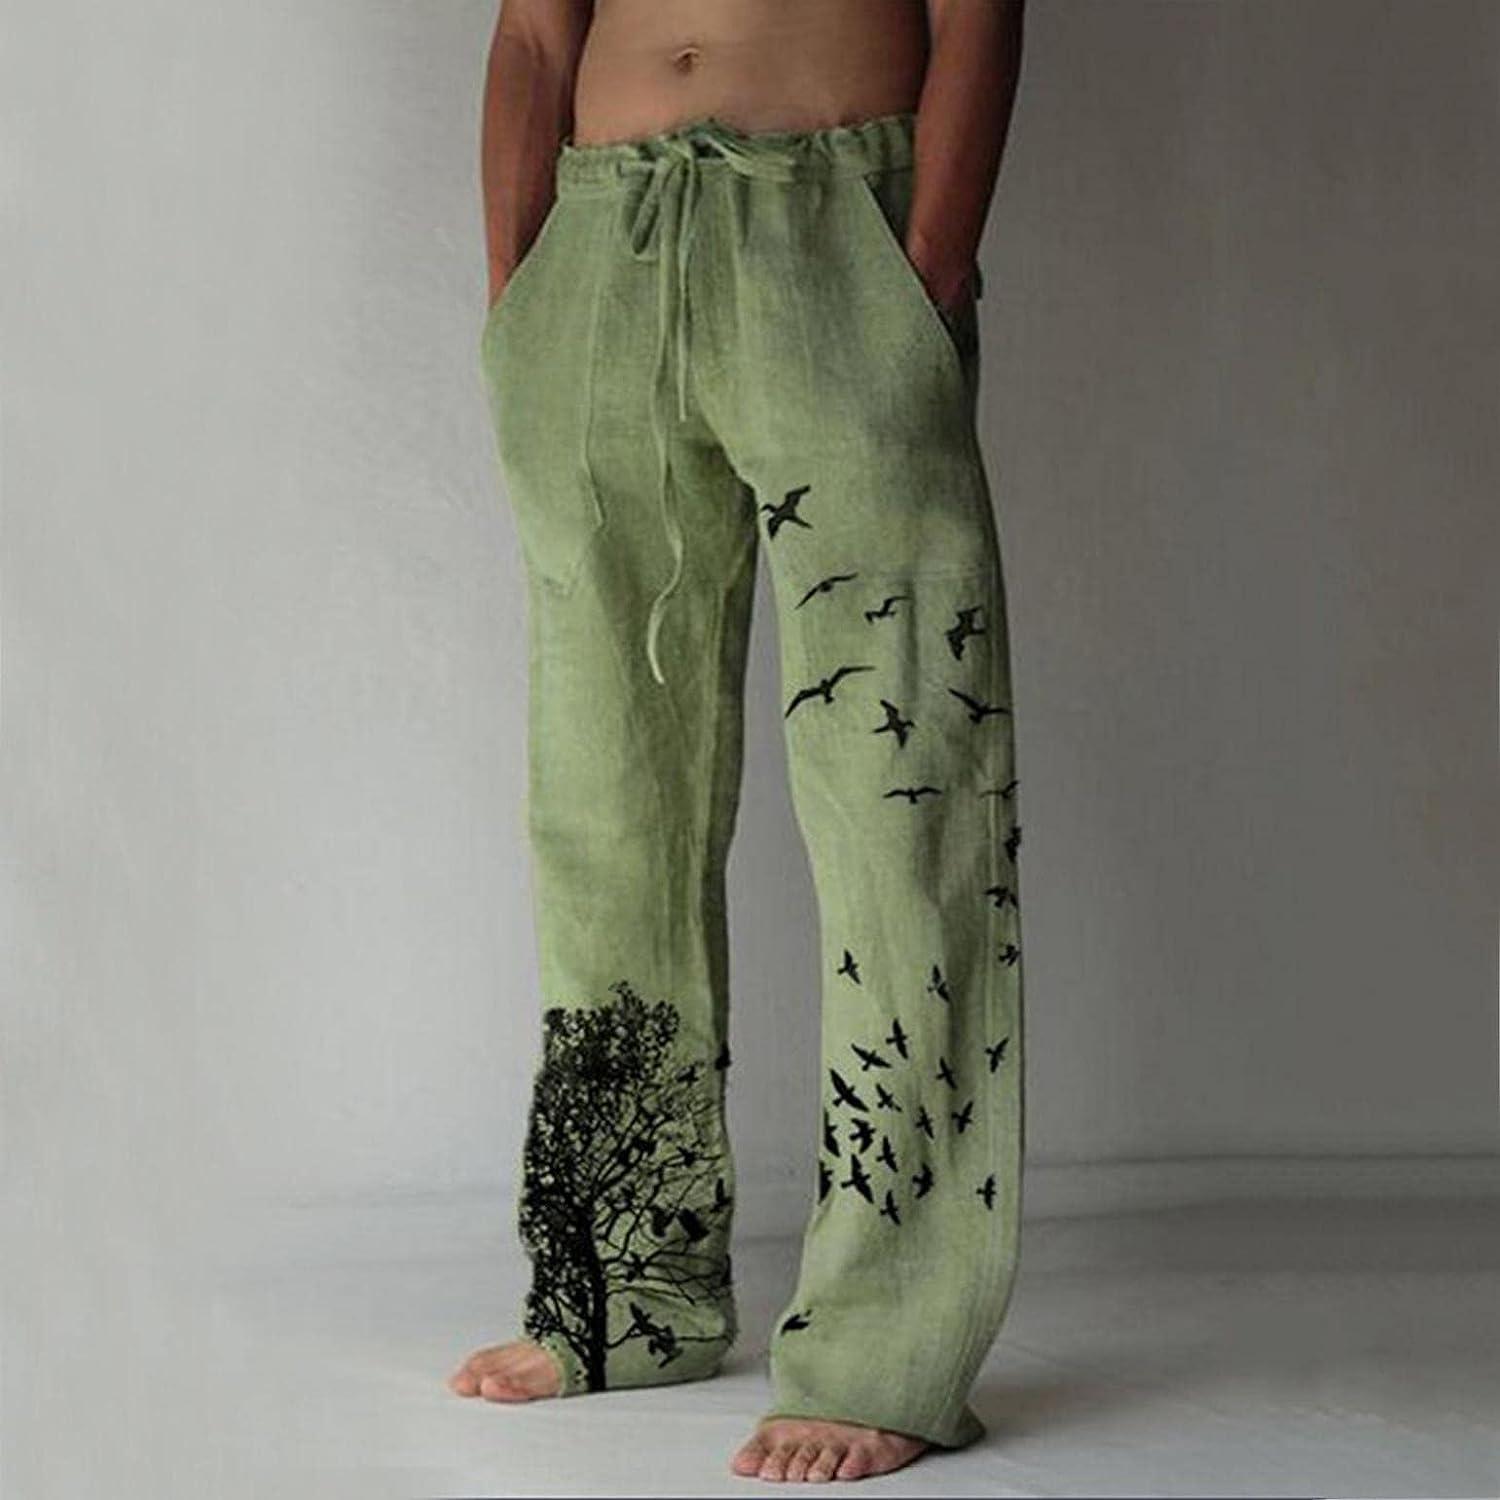 Dreamer Print Drawstring Pants in Poplin